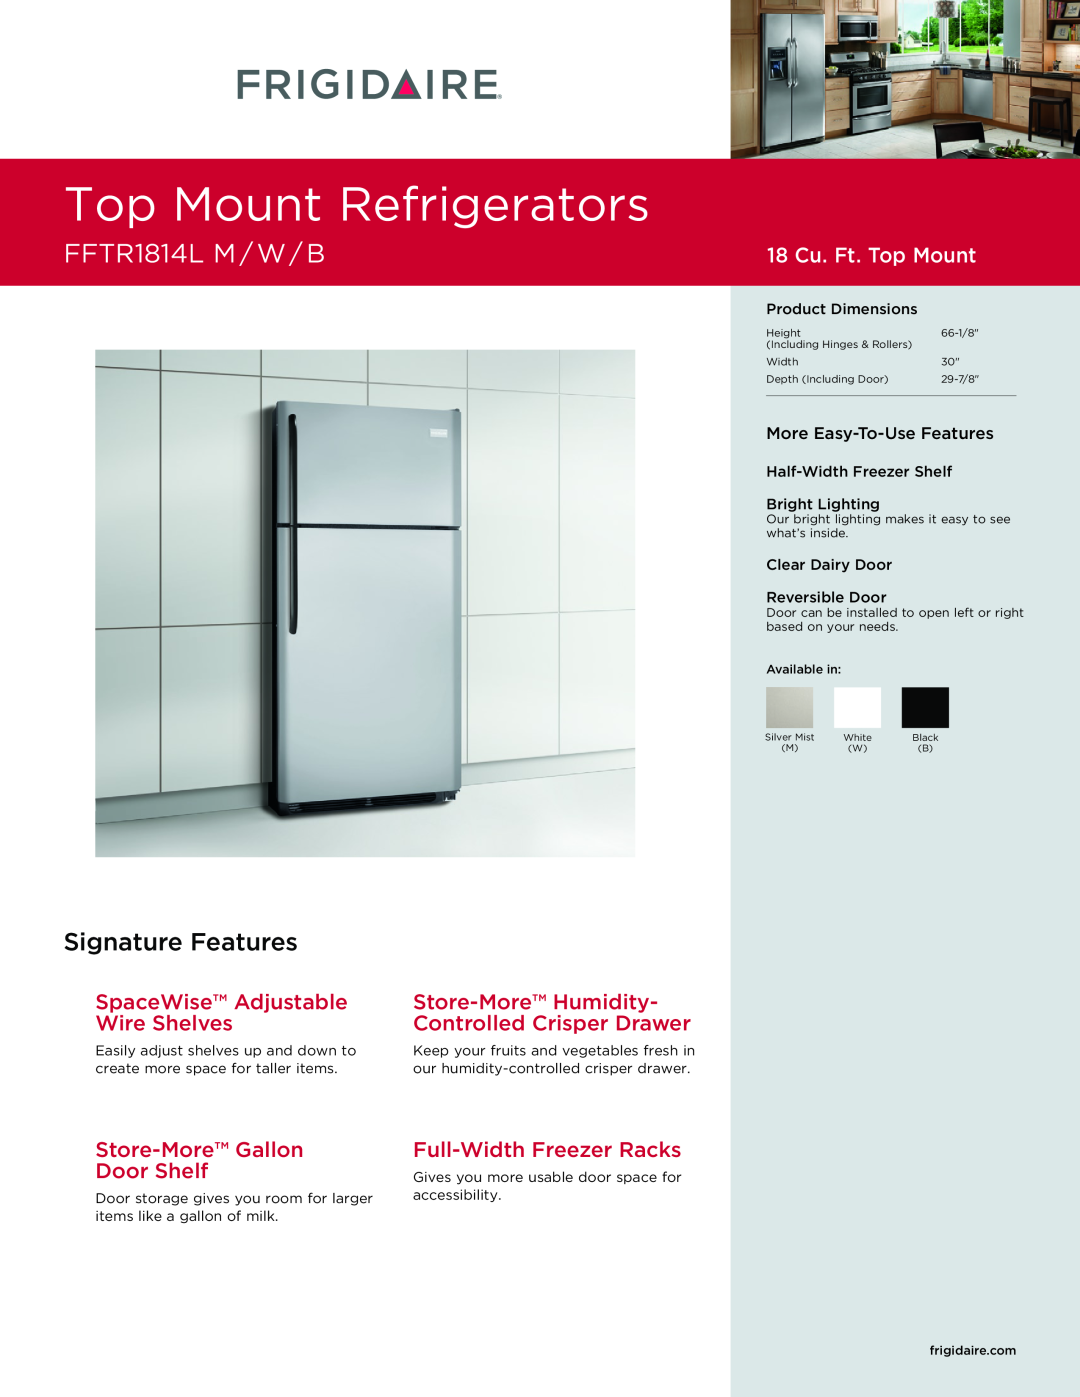 Frigidaire FFTR1814M dimensions Top Mount Refrigerators, FFTR1814L M / W / B, Signature Features, 18 Cu. Ft. Top Mount 